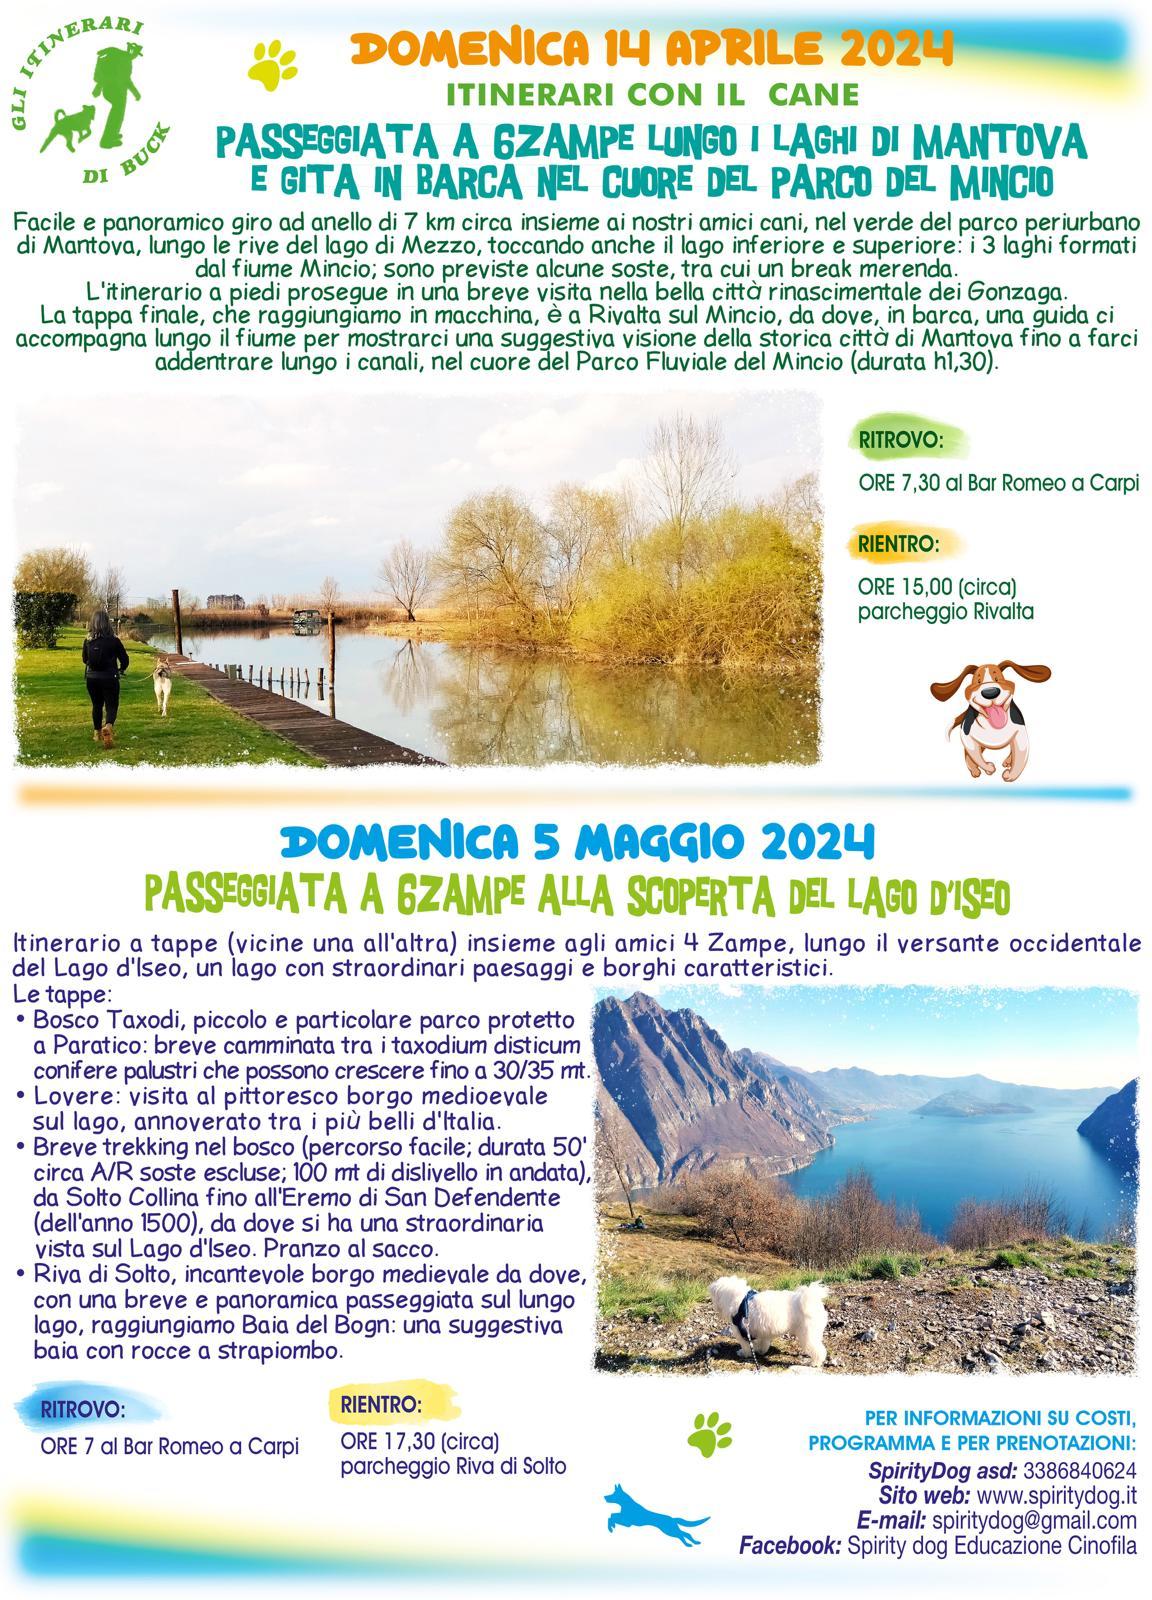 Mantova Lago d'Iseo